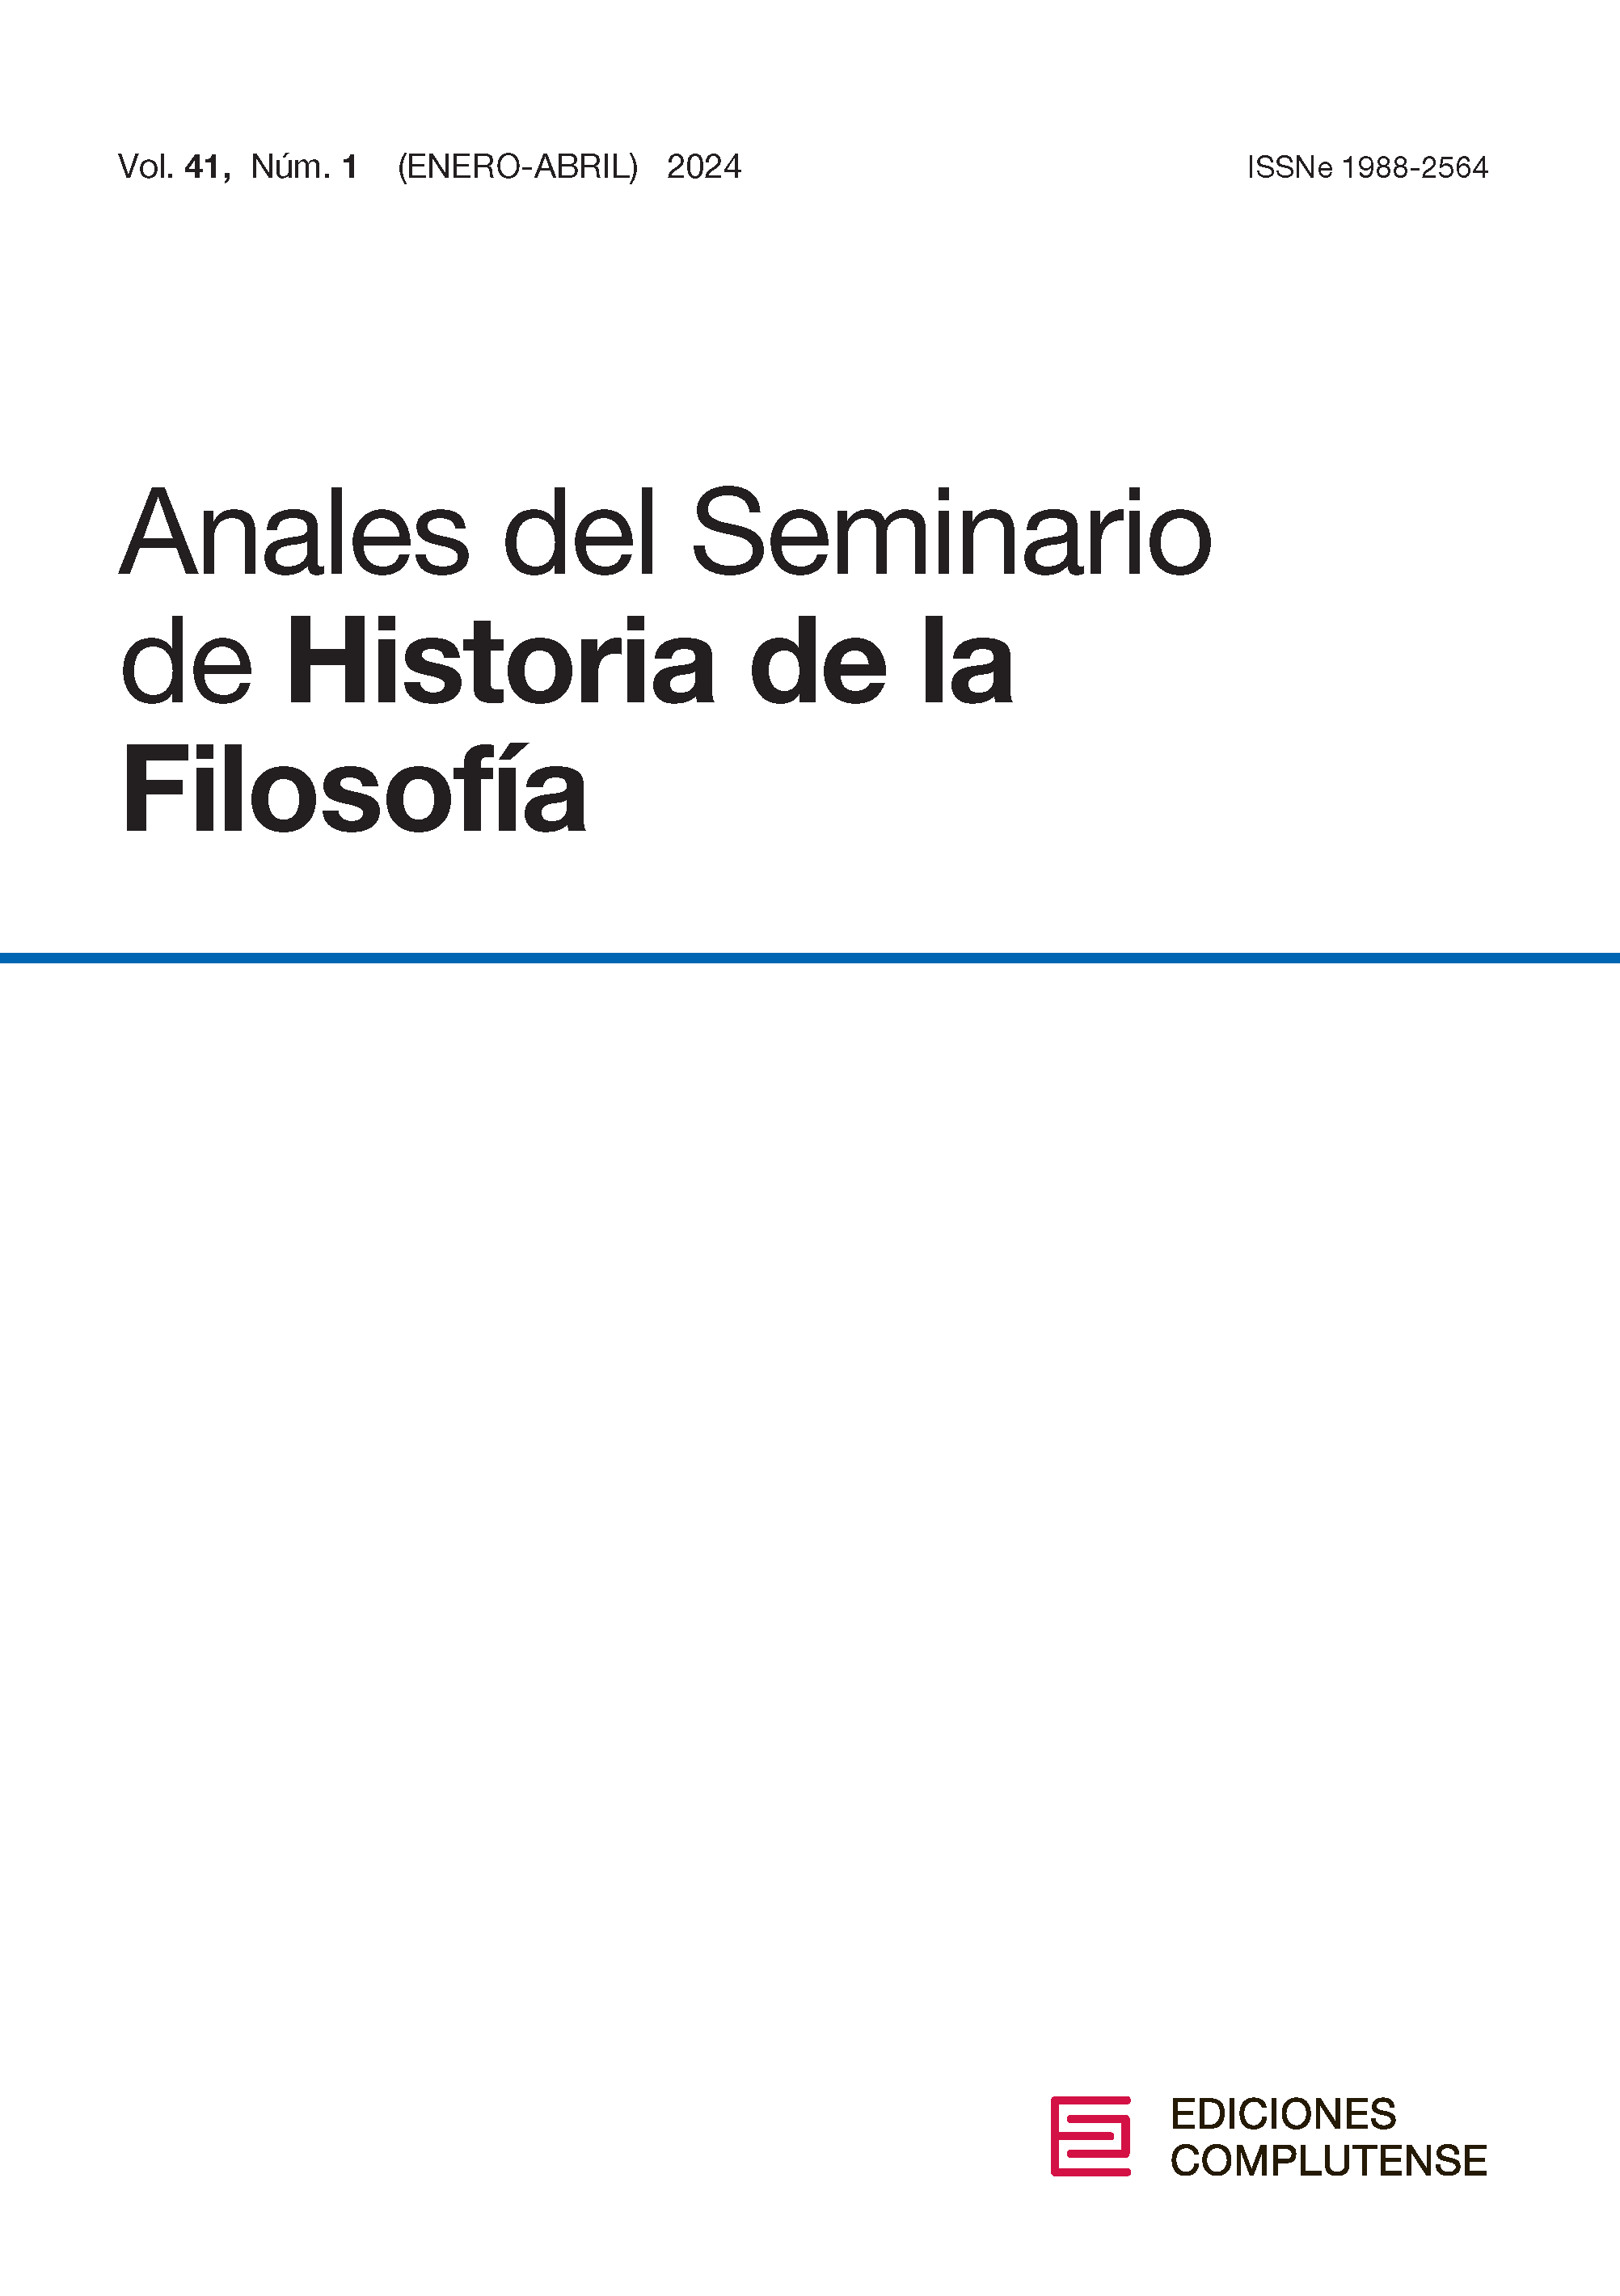 Cubierta Anales del Seminario de Historia de la Filosofía 41 (1) 2024